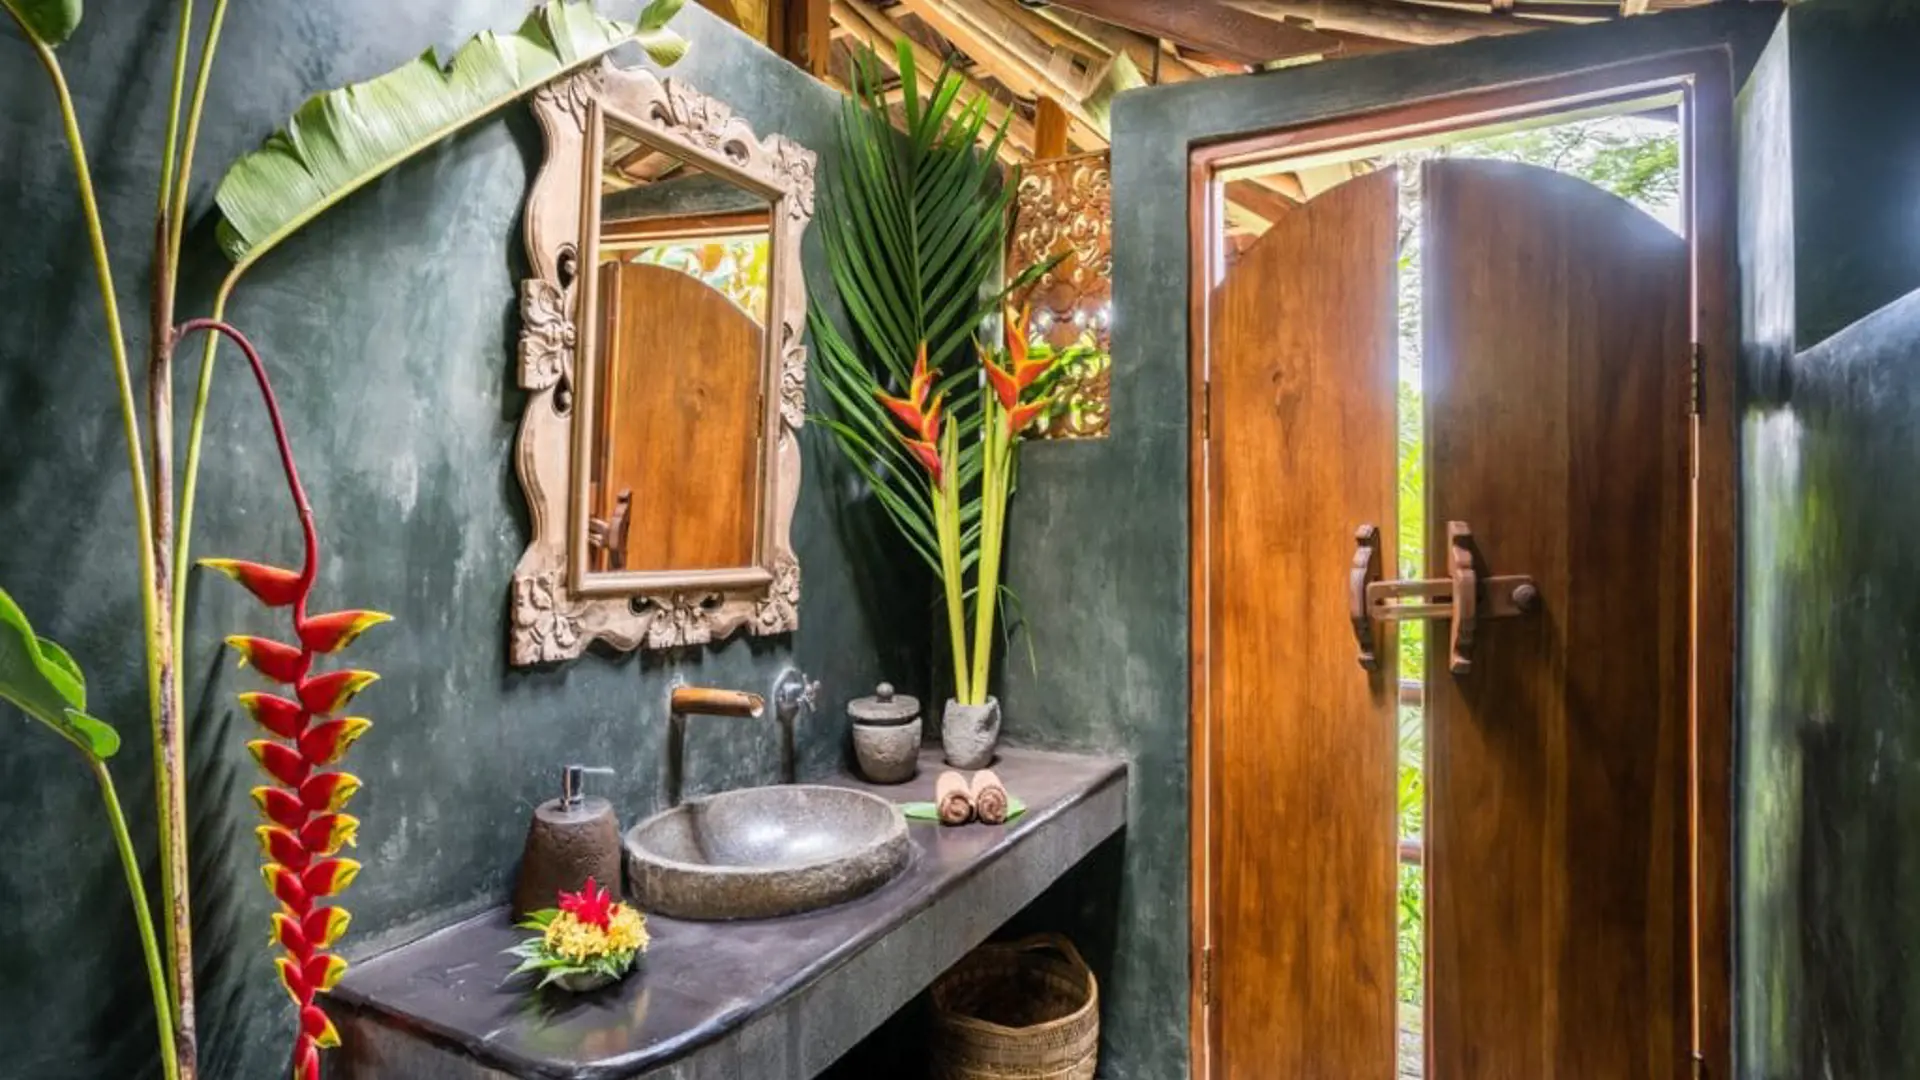 Spring-Water-overwater-bungalow-bathroom-Bali-Eco-Stay.jpg-1024x768.jpg